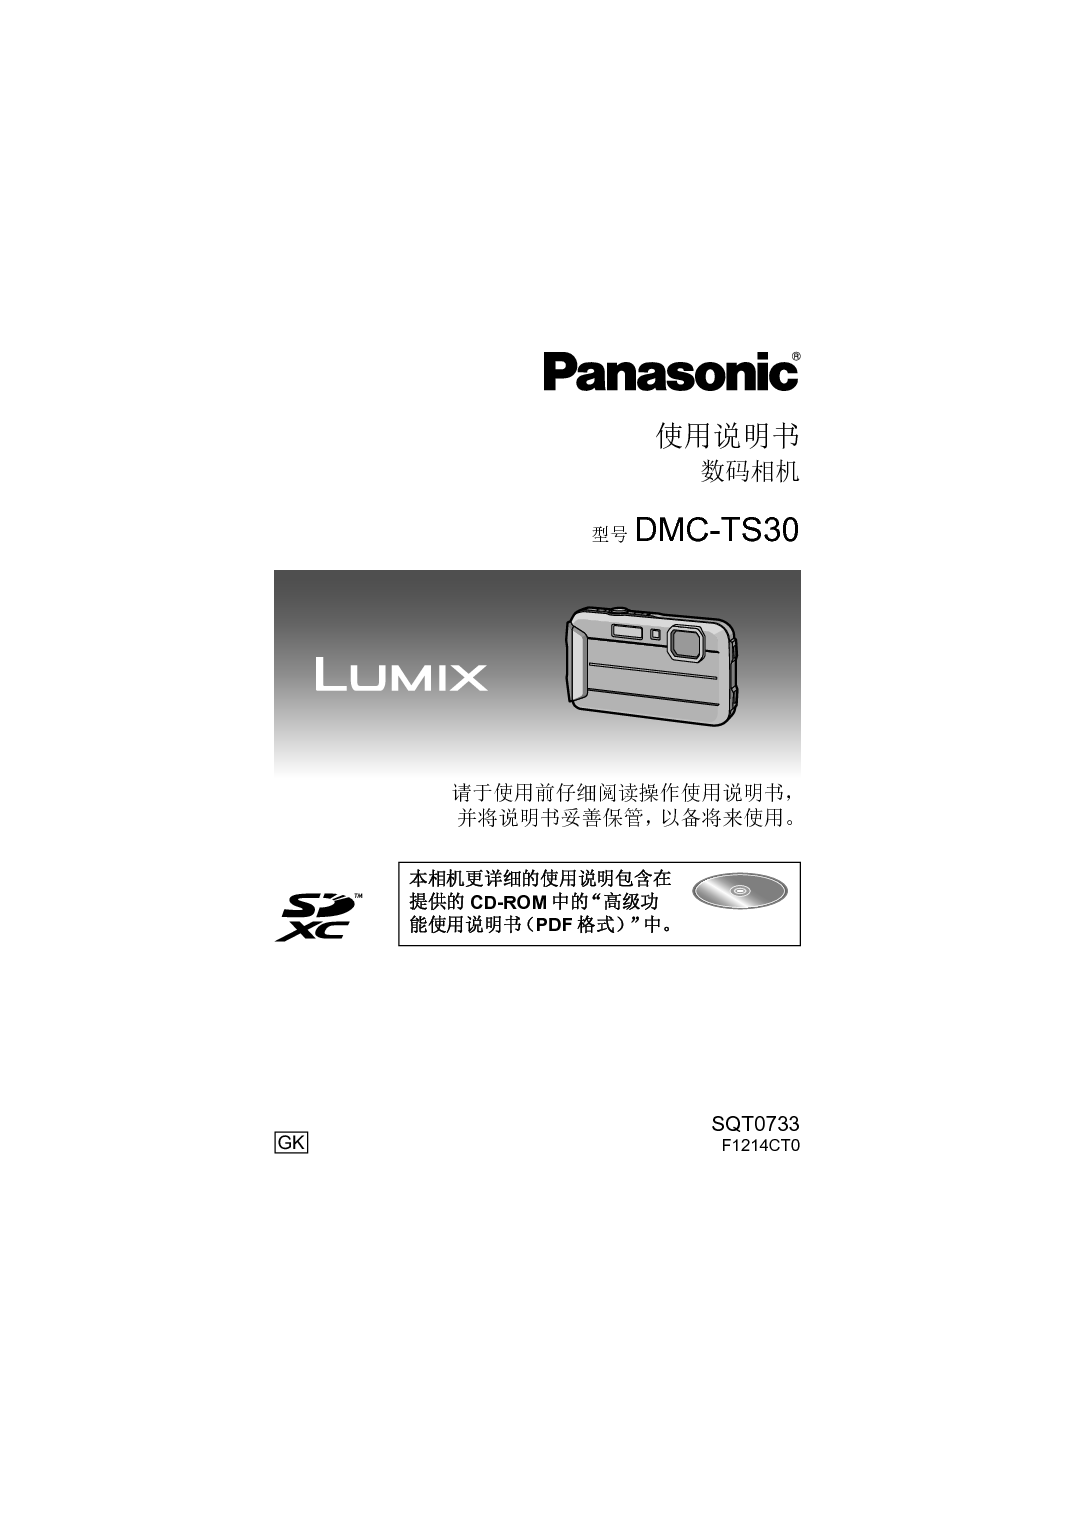 松下 Panasonic DMC-TS30GK 使用说明书 封面